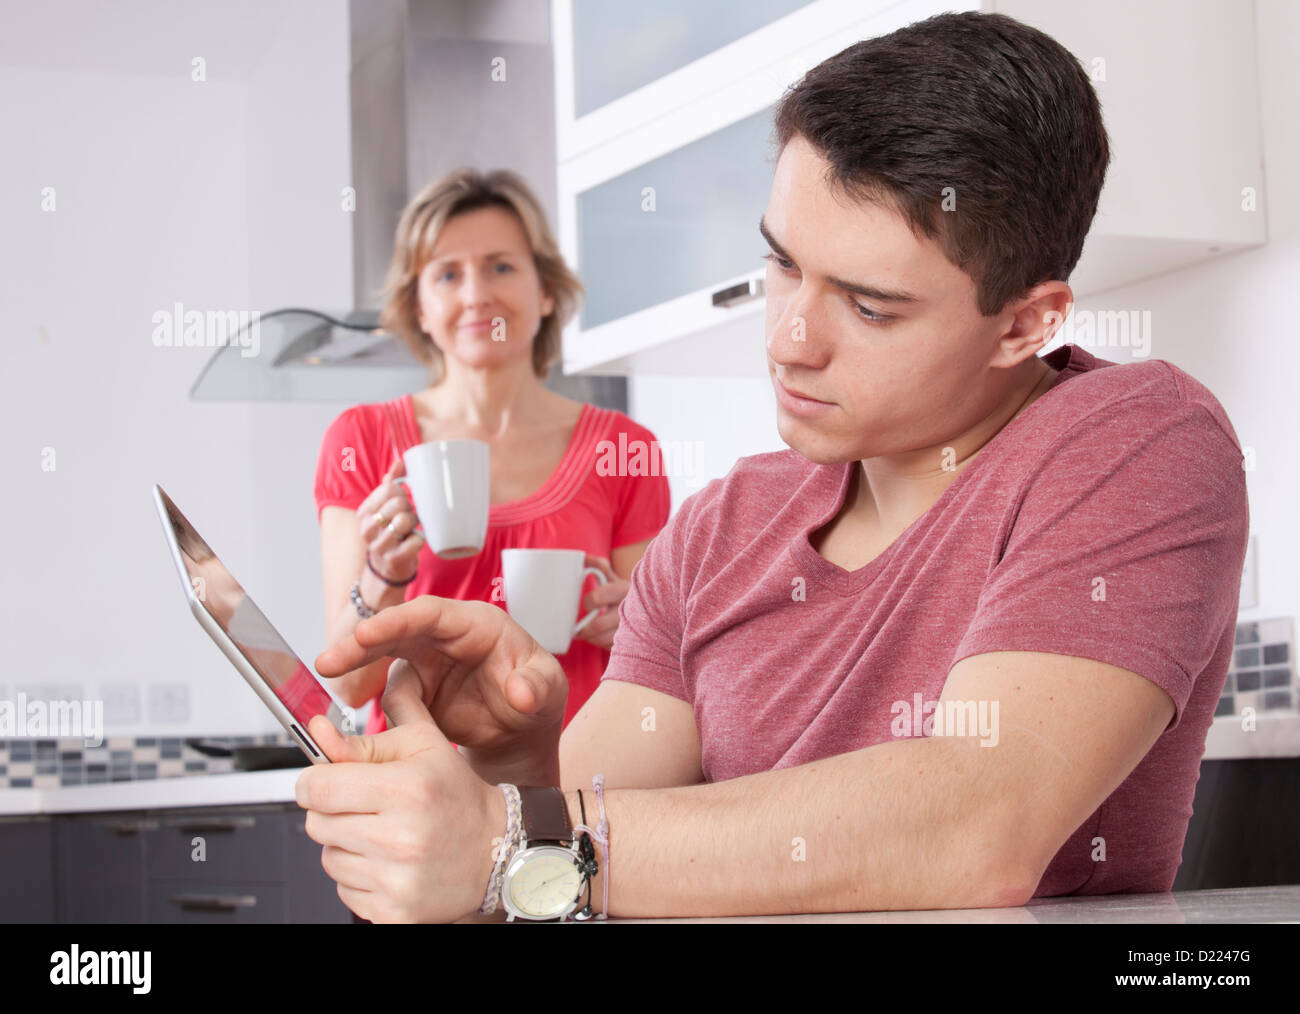 Giovane uomo utilizzando una tavoletta digitale, guardando lo schermo o monitor. Situato in una cucina moderna con una donna che mantiene due tazze sorrisi Foto Stock